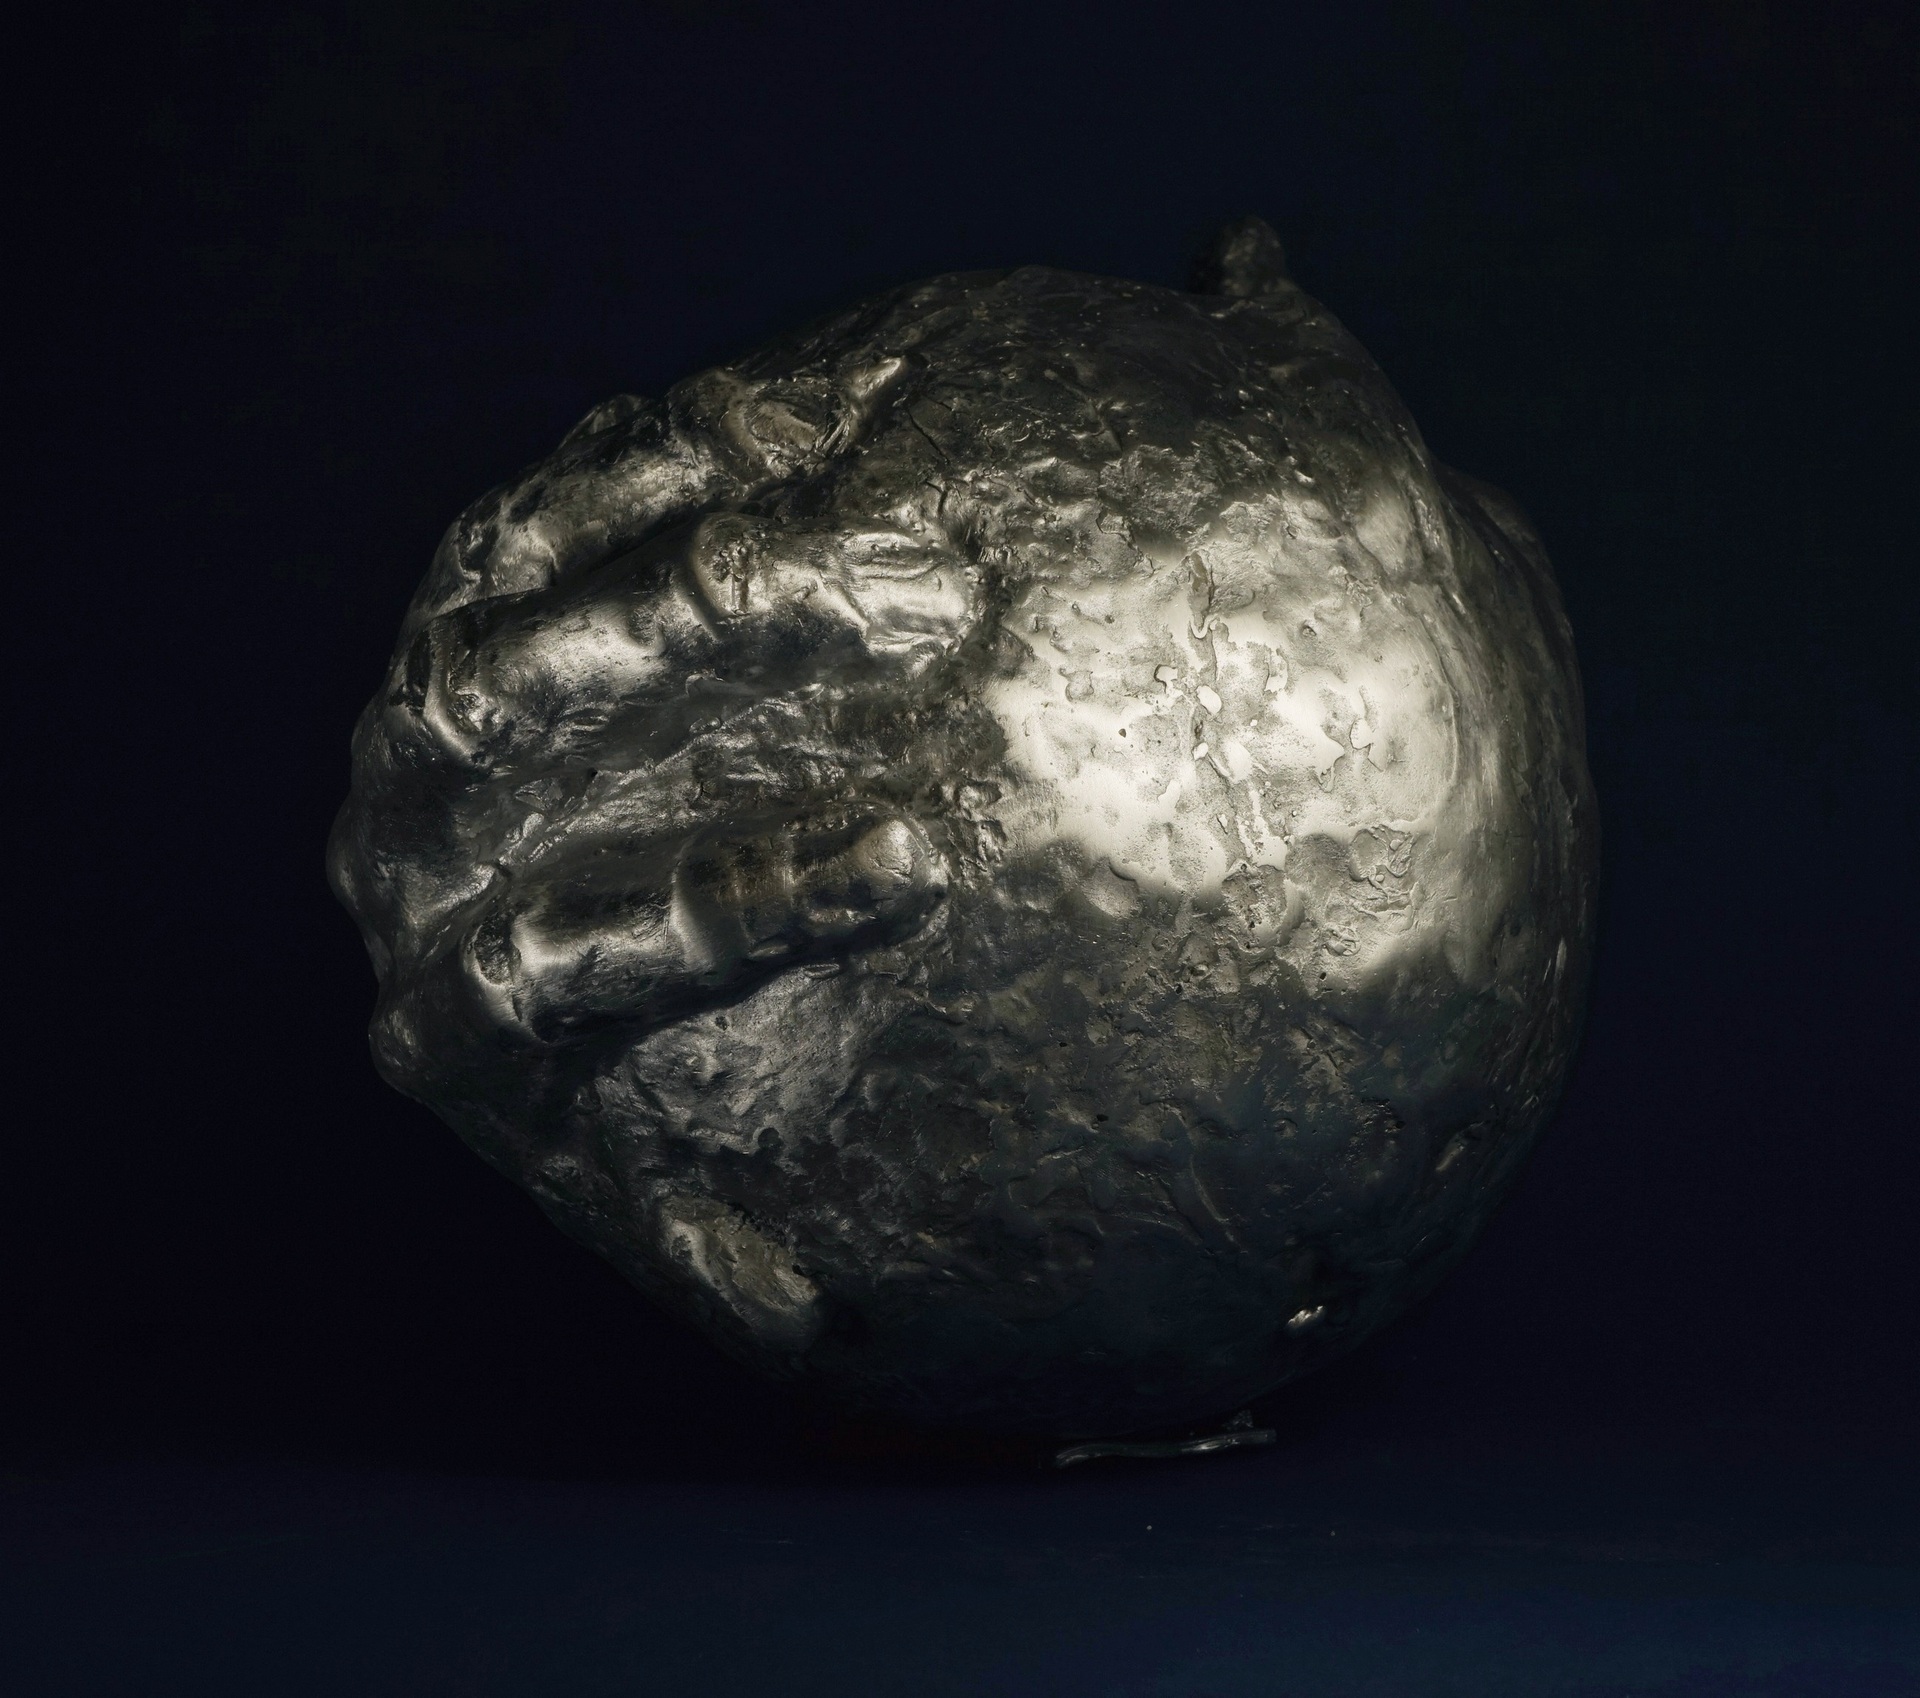 Anna Mandziak - zdjęcie przedstawiające rzeźbę kuli obejmowaną dłońmi, wykonaną z aluminium.